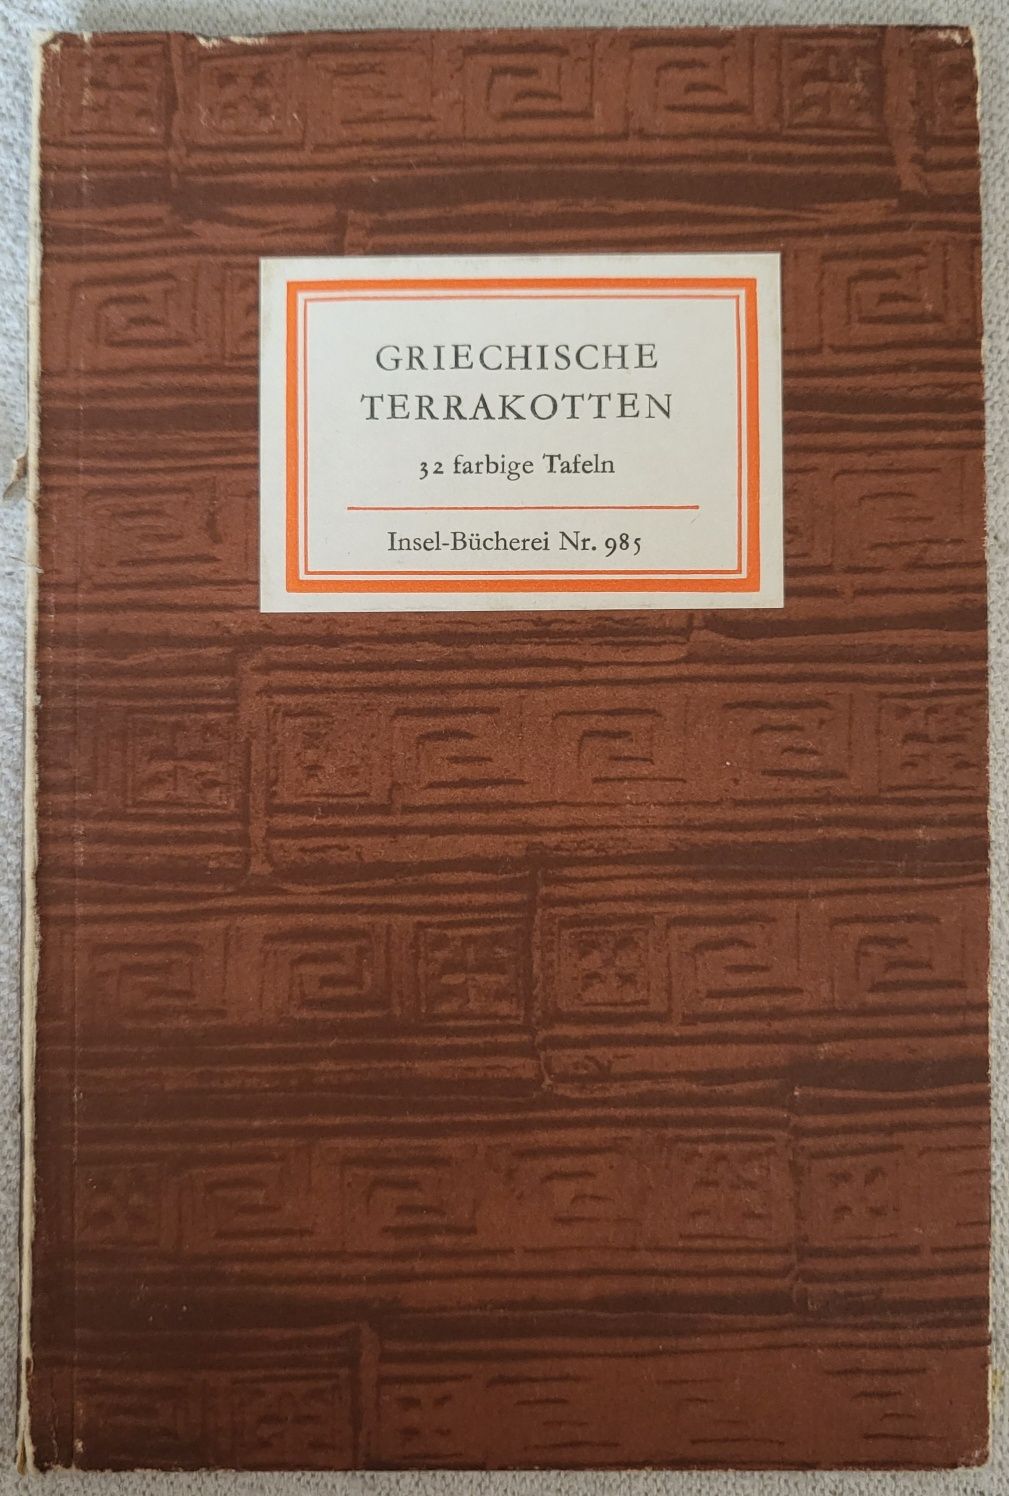 Griechische Terrakotten, 32 fabrige Tafein, Nr 985